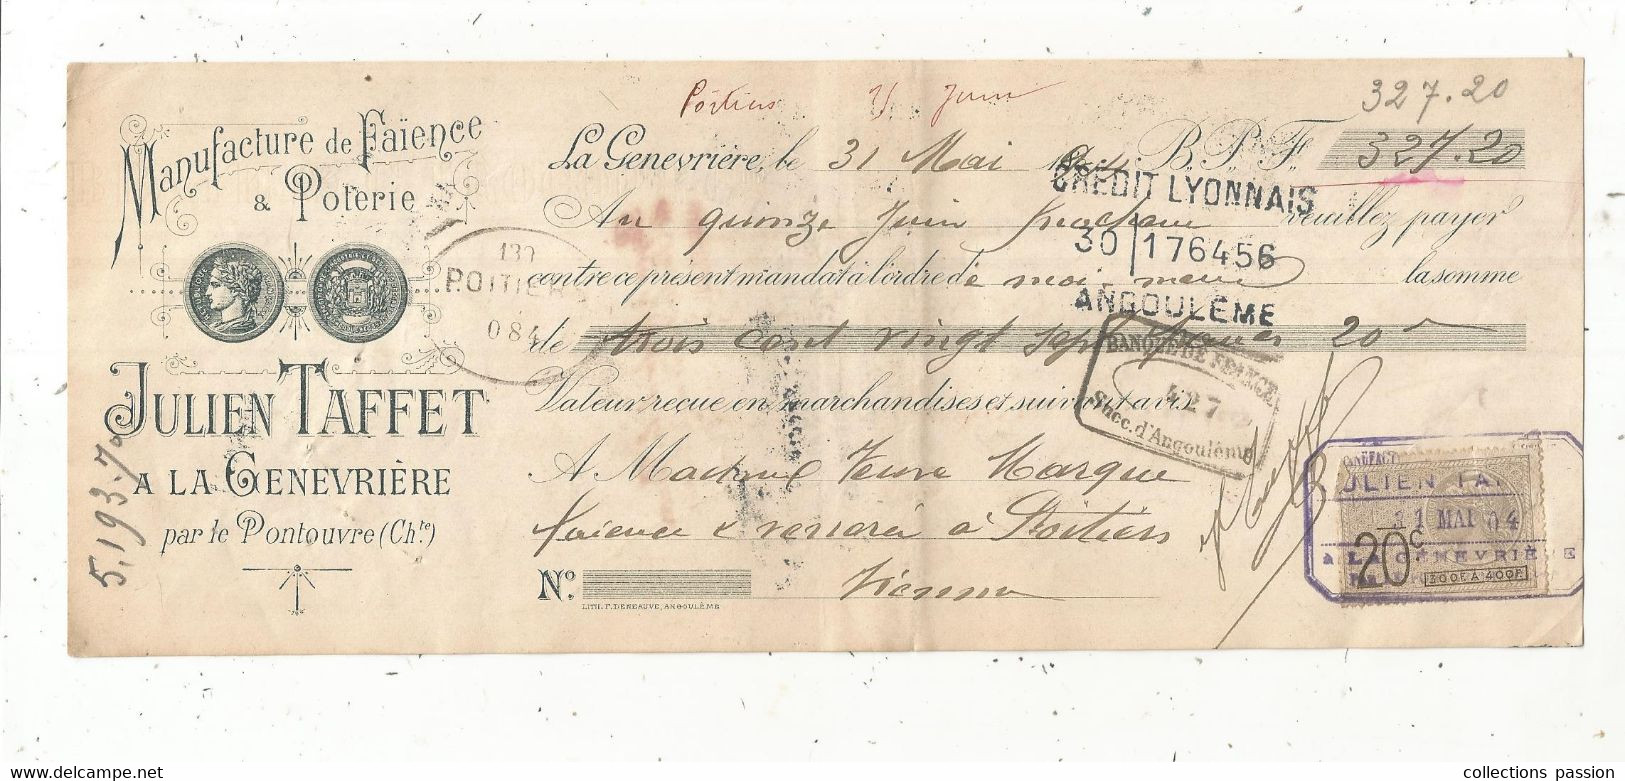 Lettre De Change 1904, Manufacture De FaÏence & Poterie J. Taffet à La GENEVRIERE Par Le Poutouvre, 16, Frais Fr 1.75 E - Lettres De Change